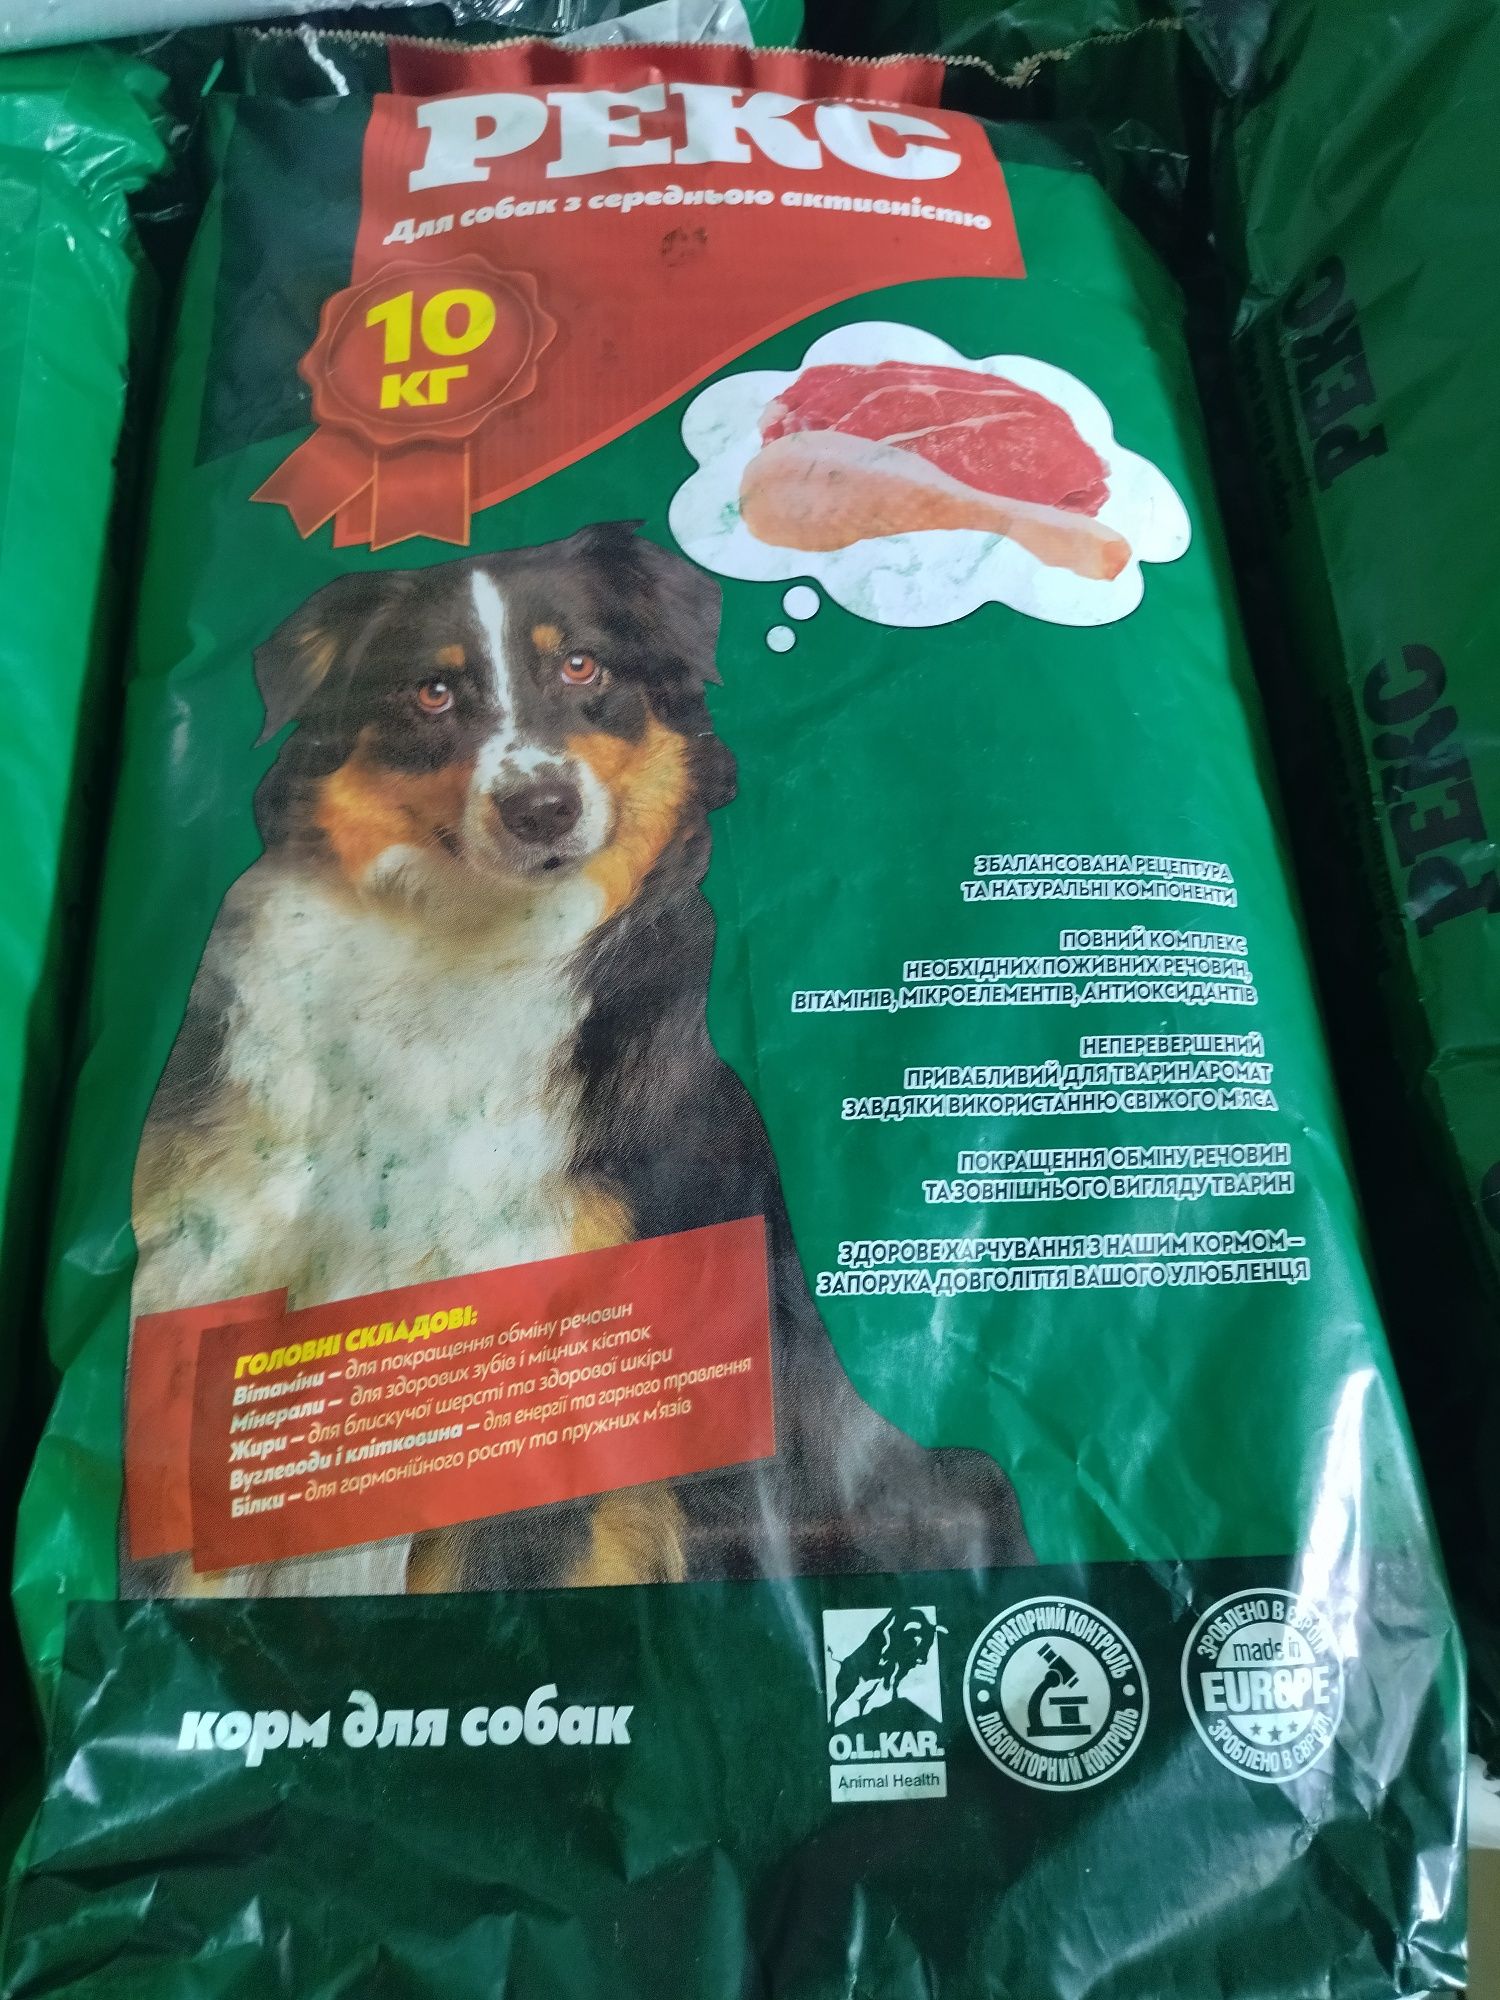 Безкоштовна  олх доставка! Рекс для собак , сухий корм для собак 10 кг